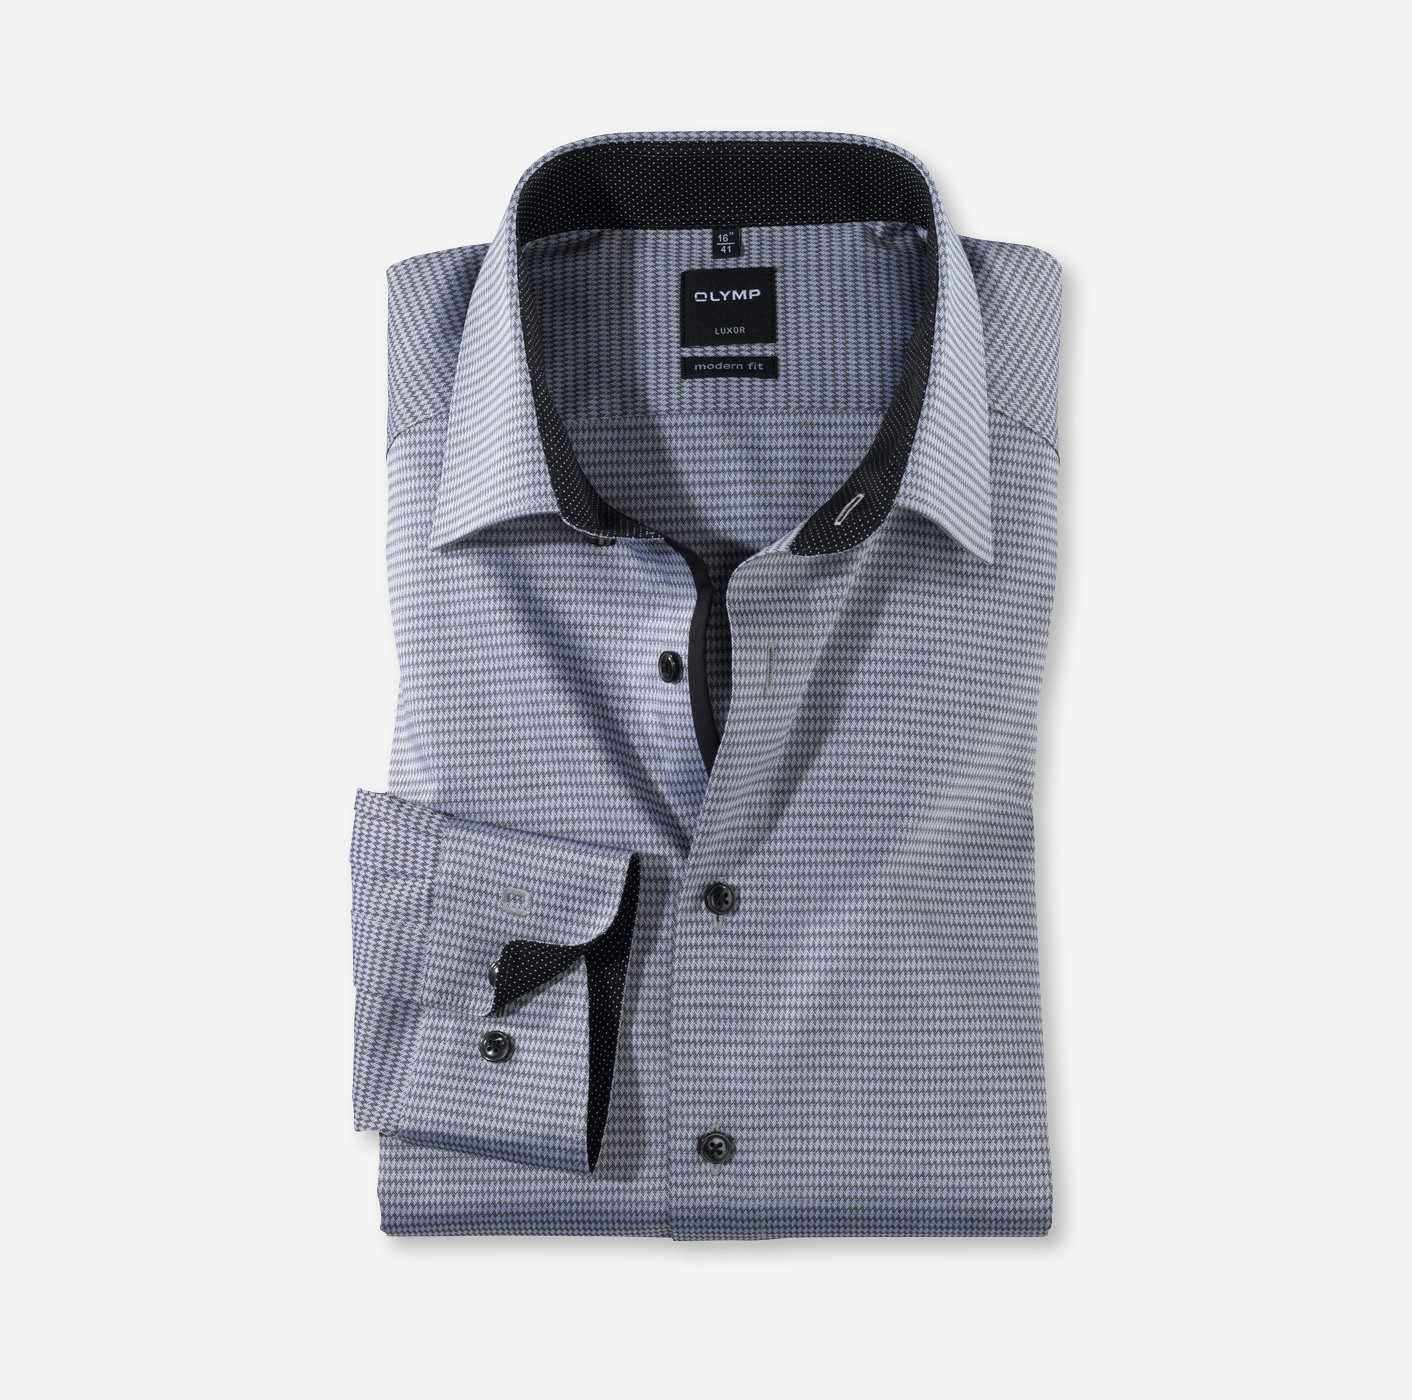 OLYMP Luxor, modern fit, Business shirt, New Kent, Noir